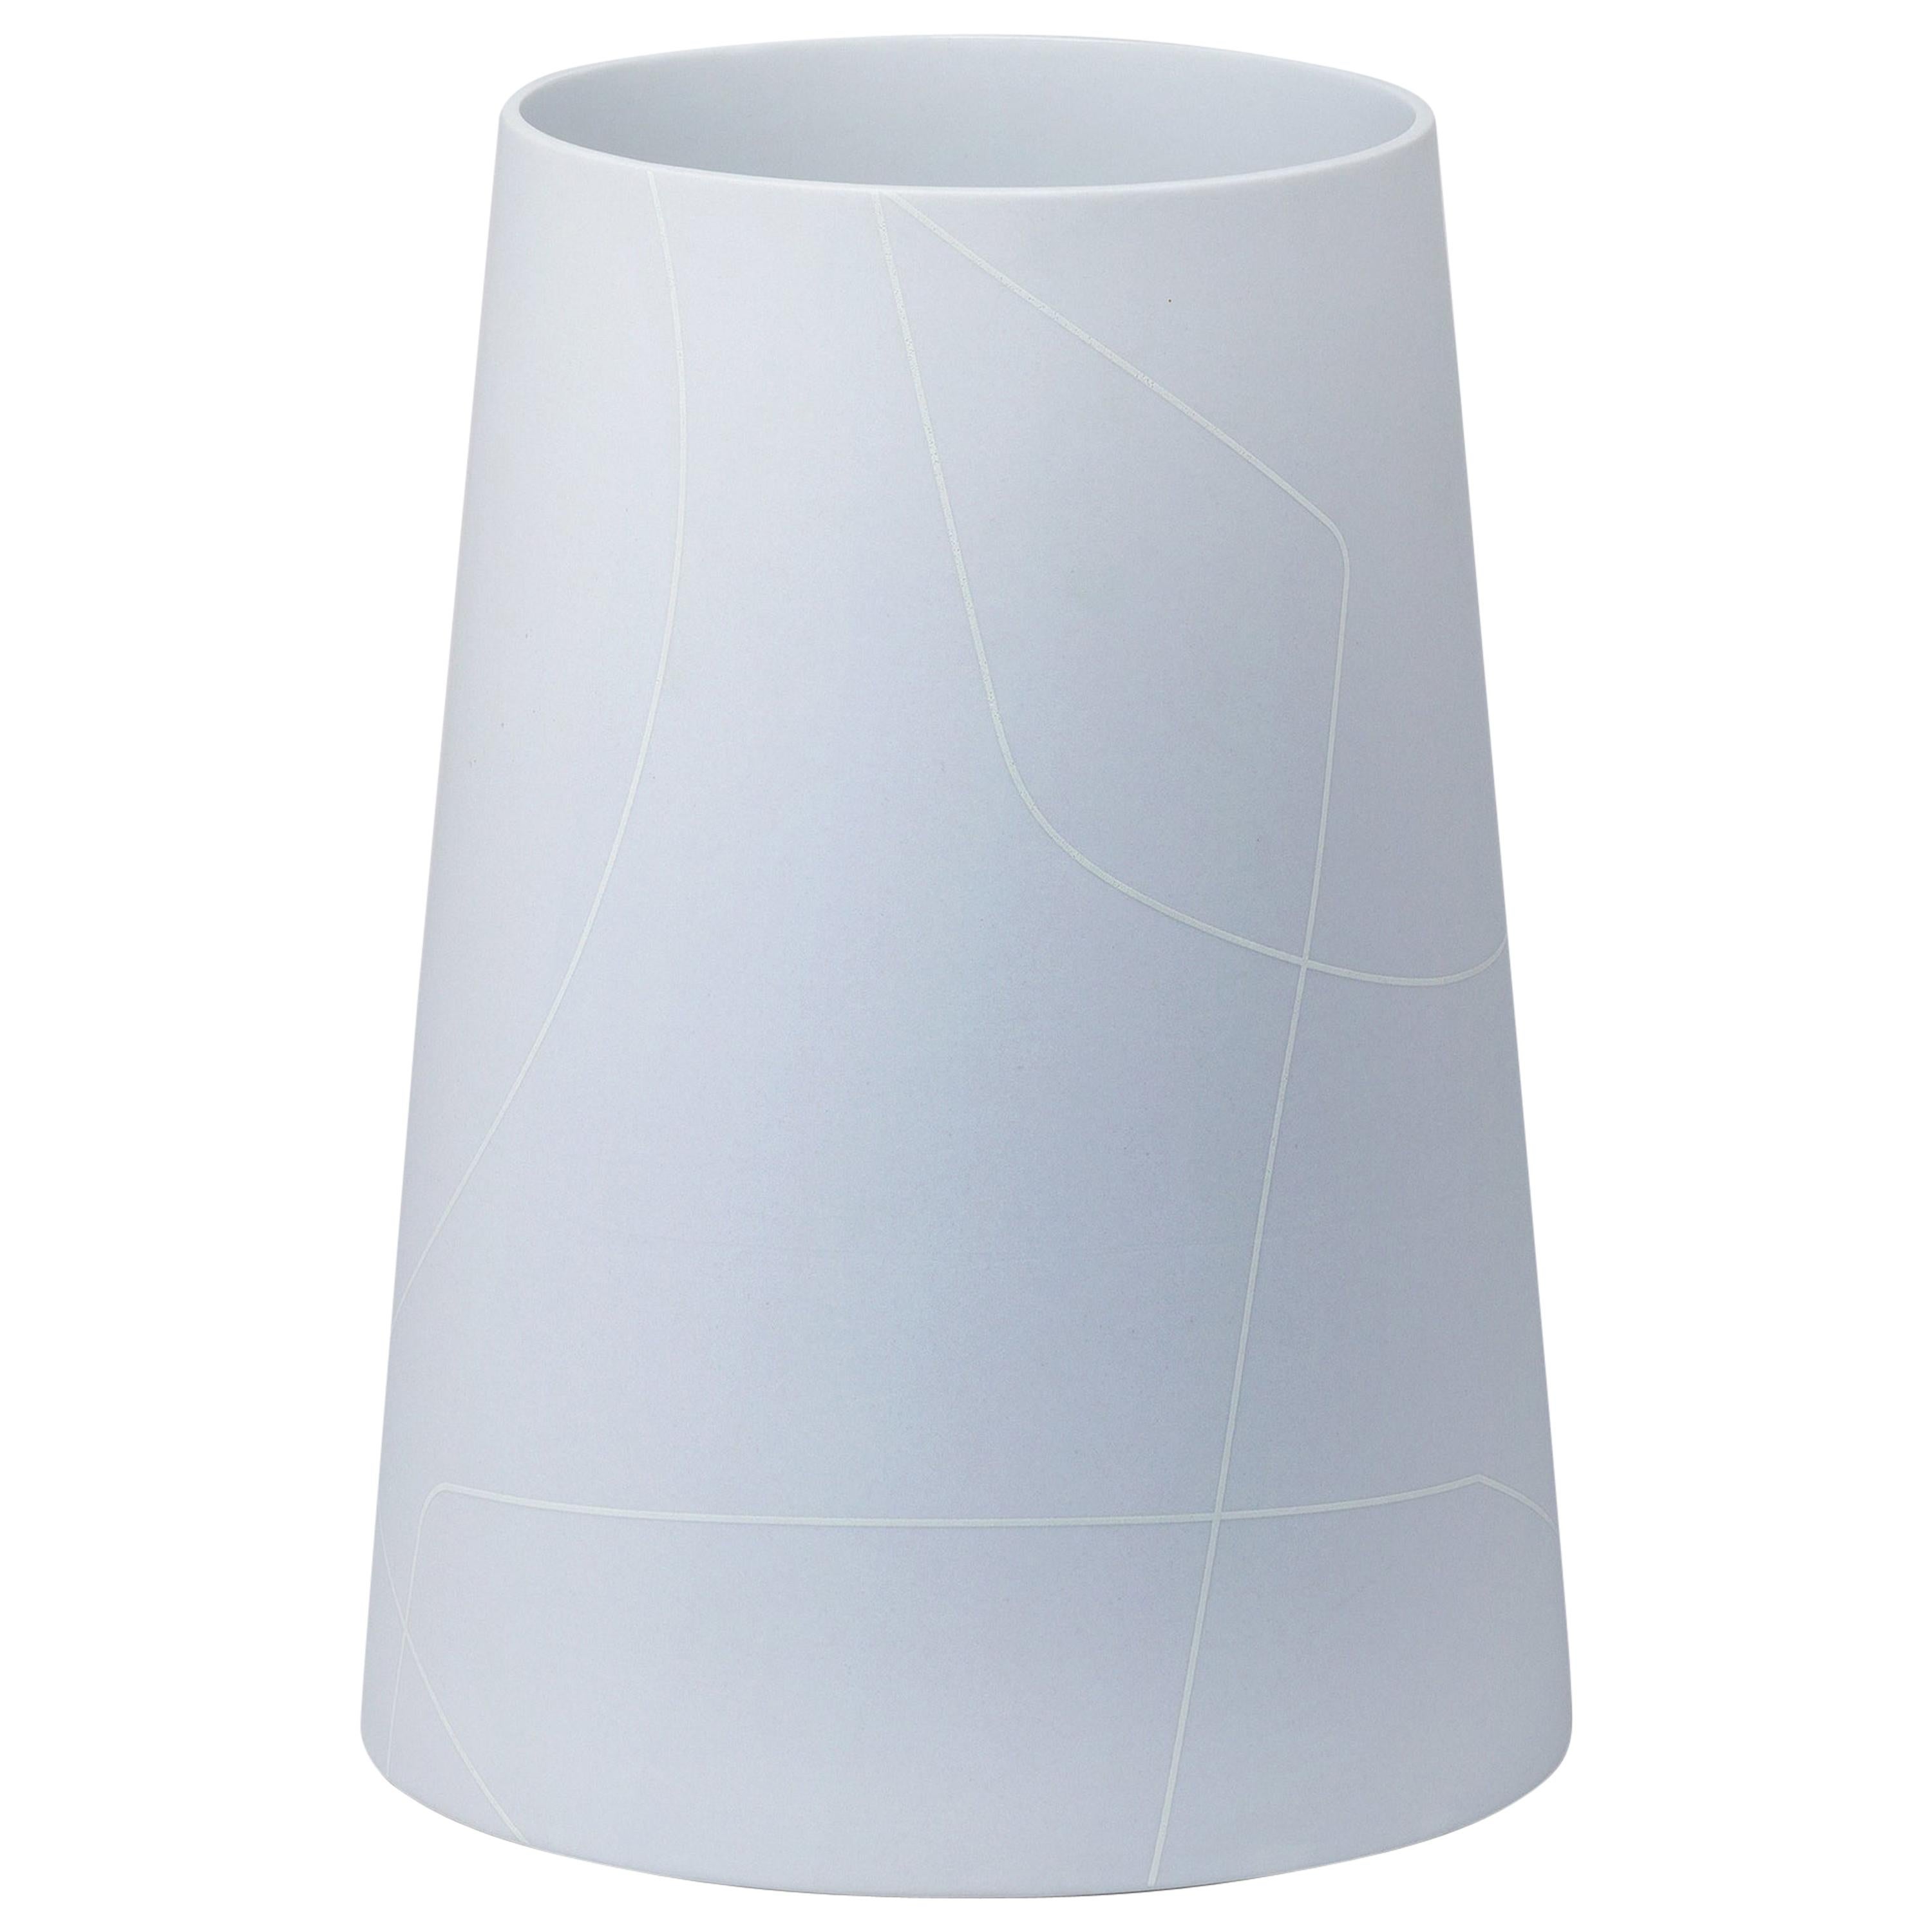 Grand vase conique en céramique gris clair avec motif de lignes graphiques